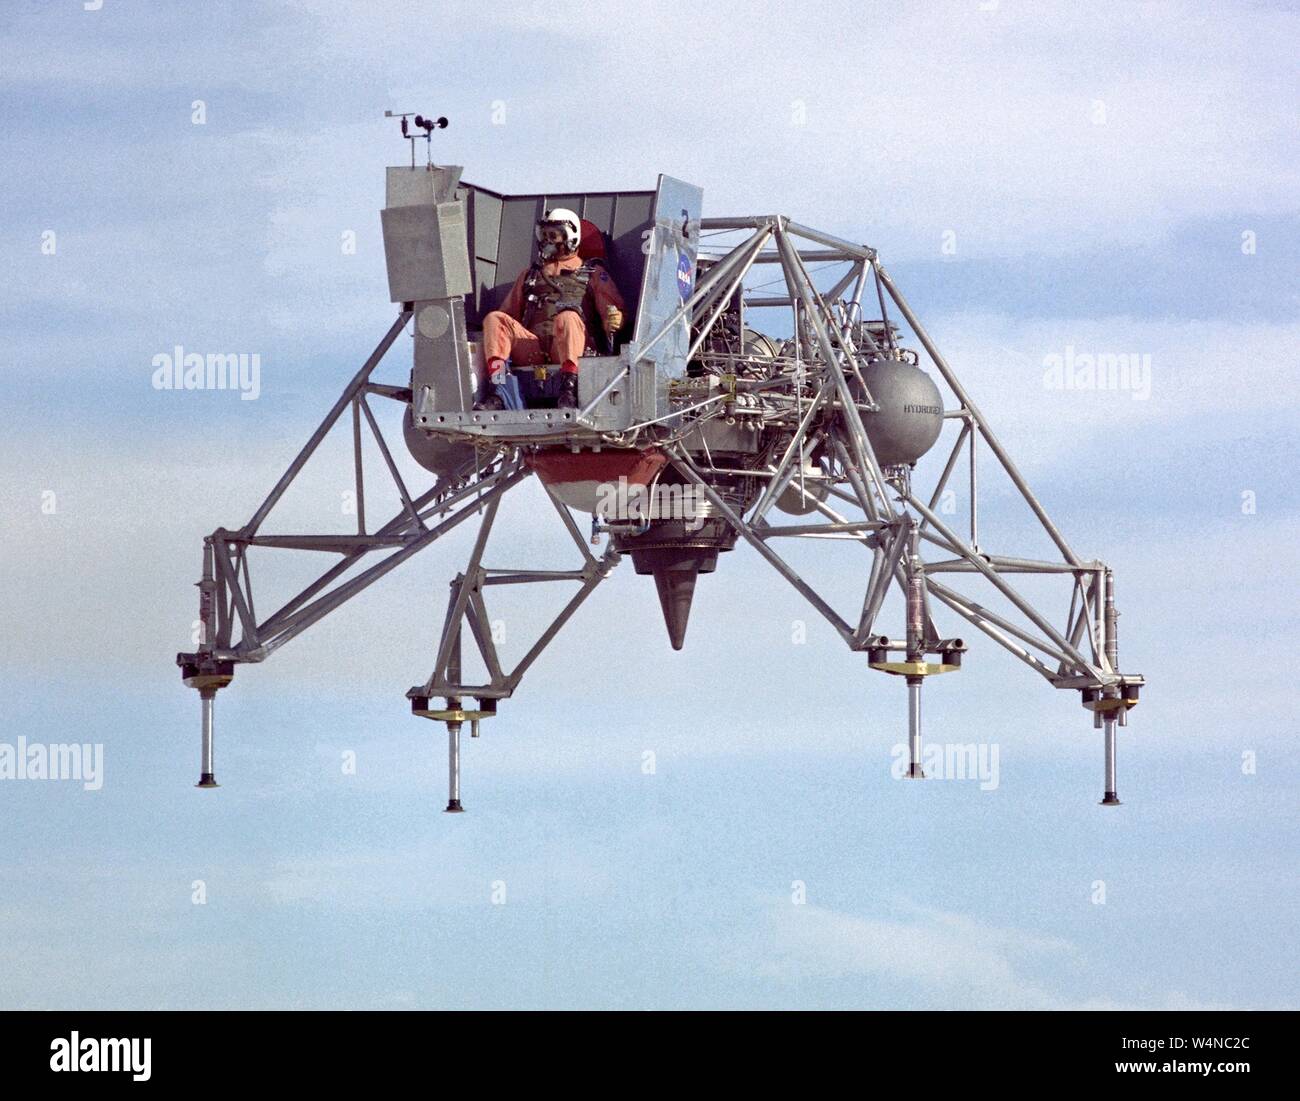 NASA ricerca pilota Joe Walker piloti di atterraggio lunare di Ricerca Veicolo (LLRV) al Dryden Flight Research Center, Edwards Air Force Base in California, 11 gennaio 1967. Immagine cortesia Nazionale Aeronautica e Spaziale Administration (NASA). () Foto Stock